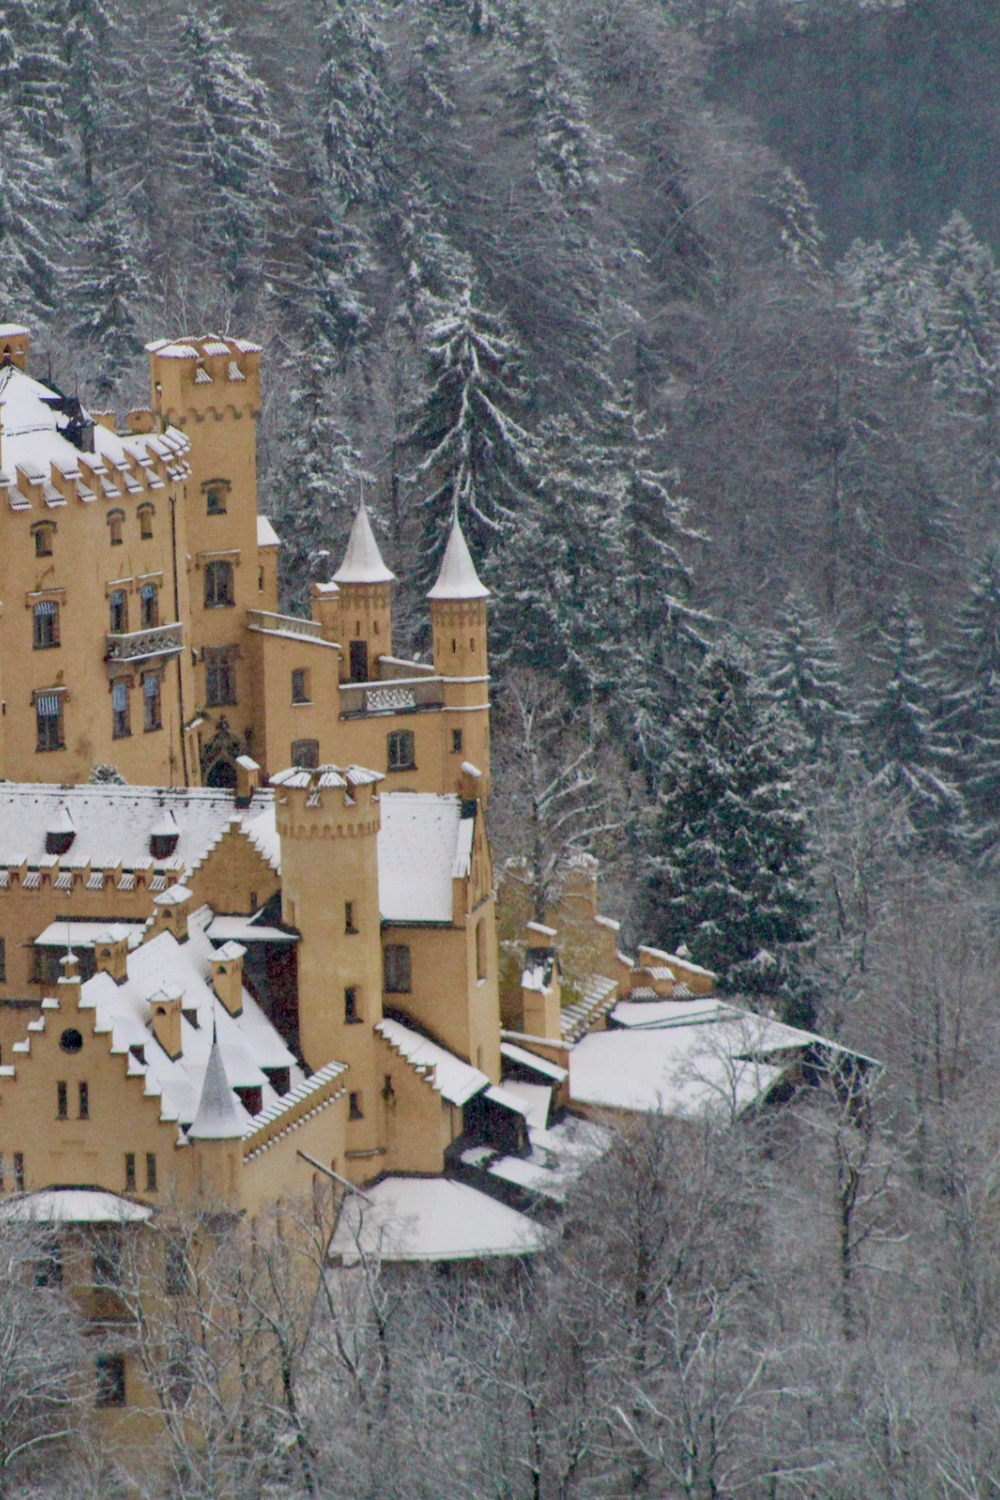 19 travel destinations Germany neuschwanstein castle ideas